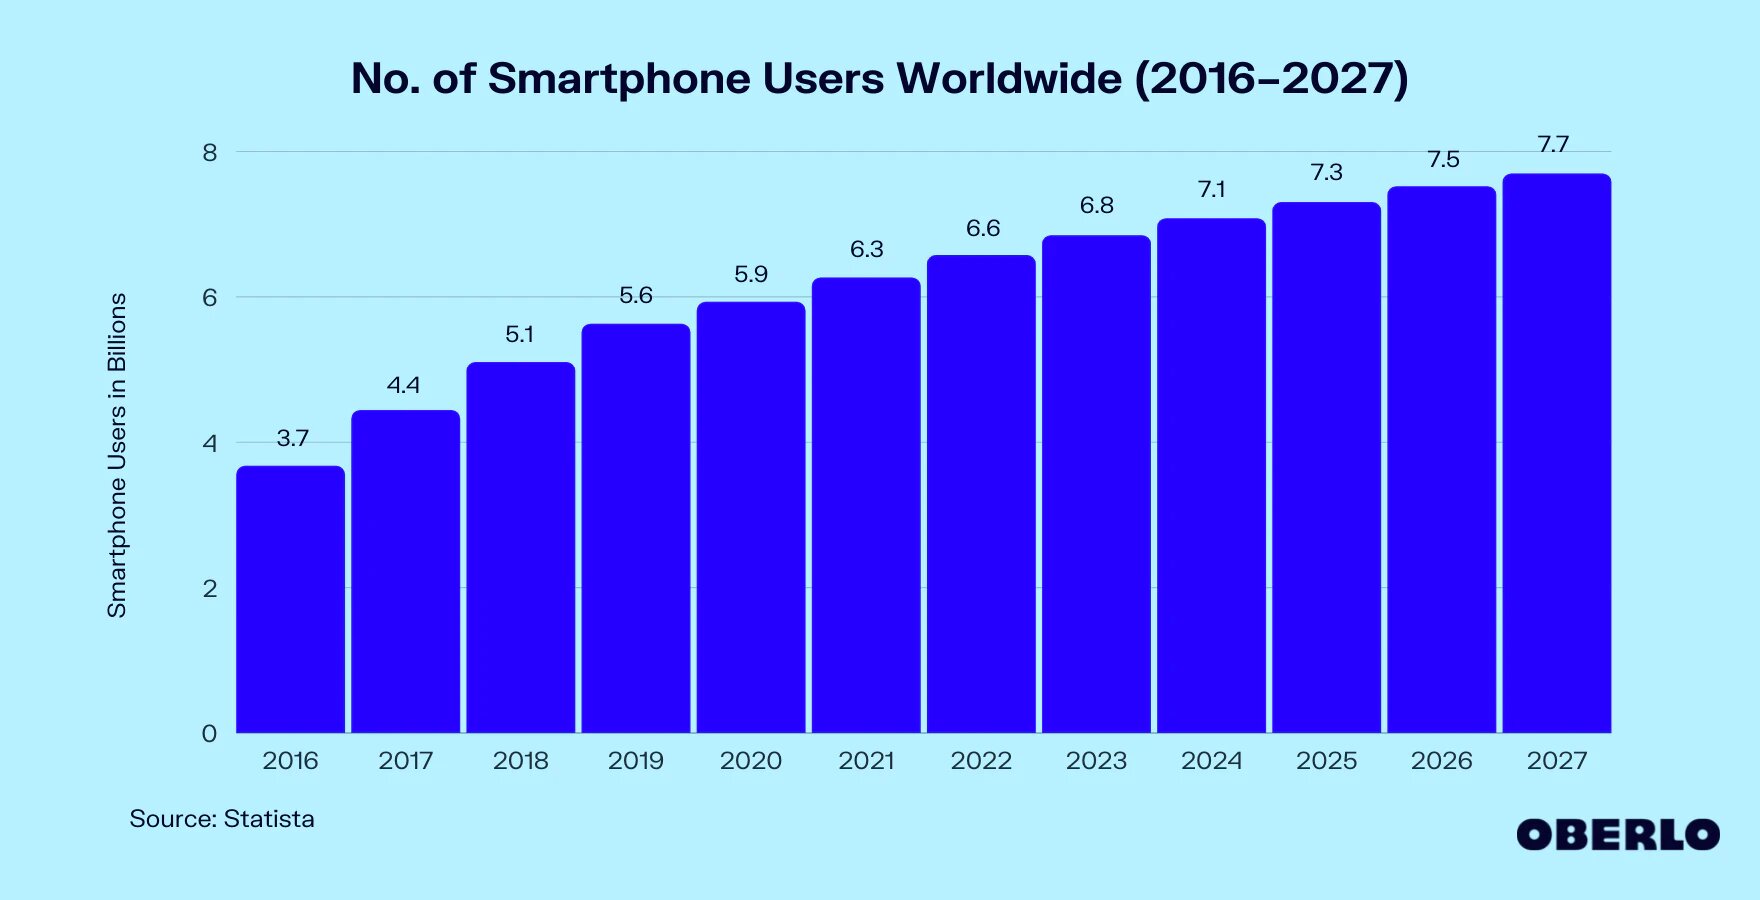 Globalna liczba użytkowników smartfonów